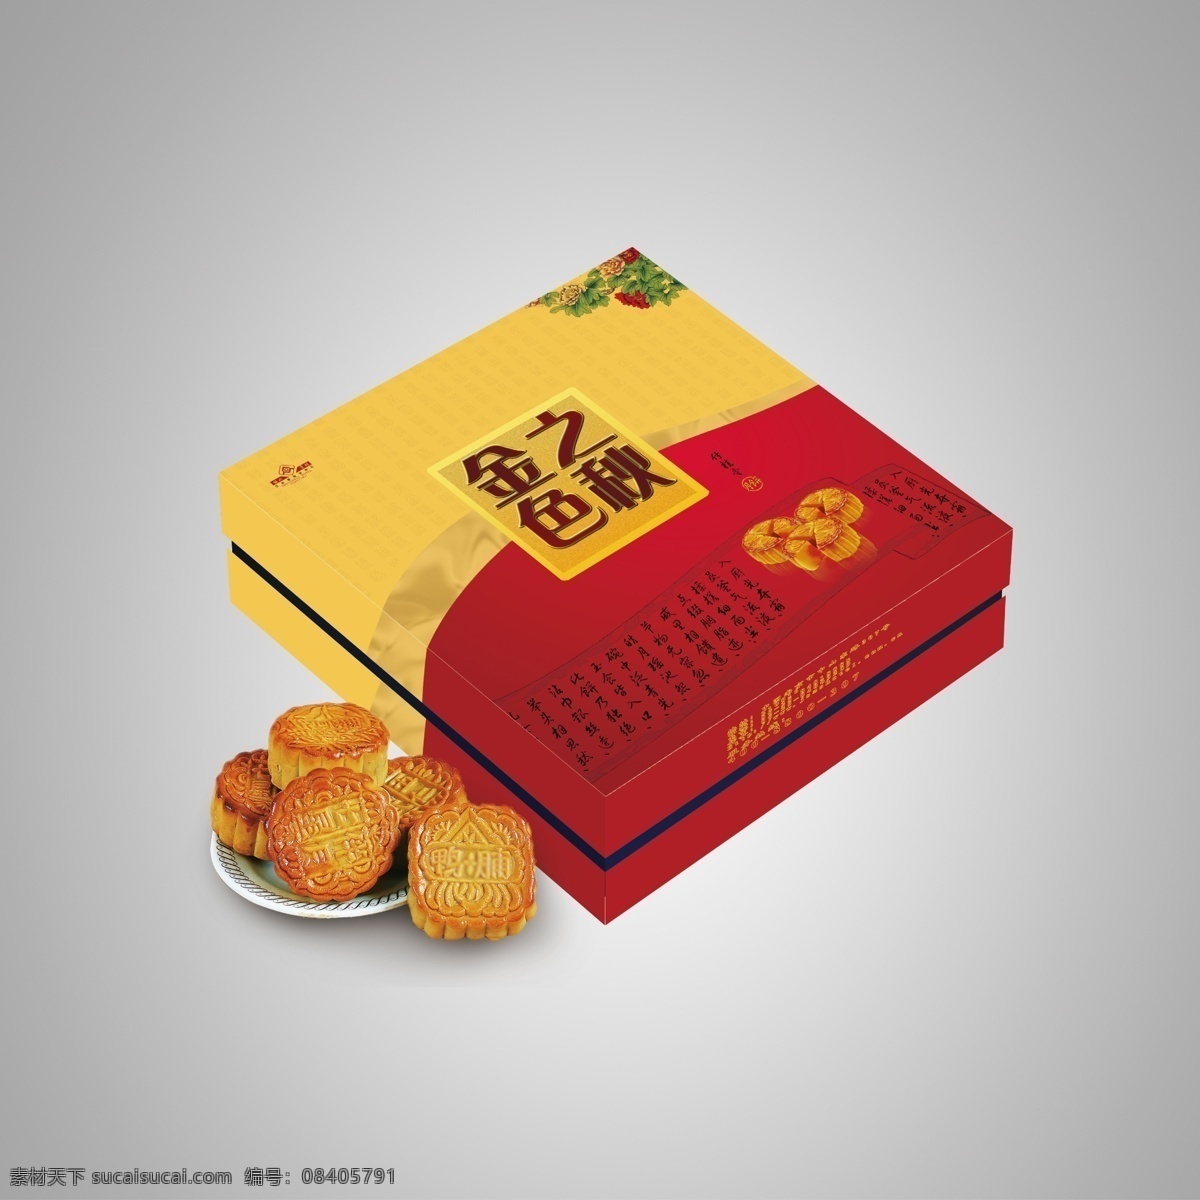 中国 中秋月饼 礼品 礼盒 包装设计 中秋 月饼 礼品礼盒 灰色